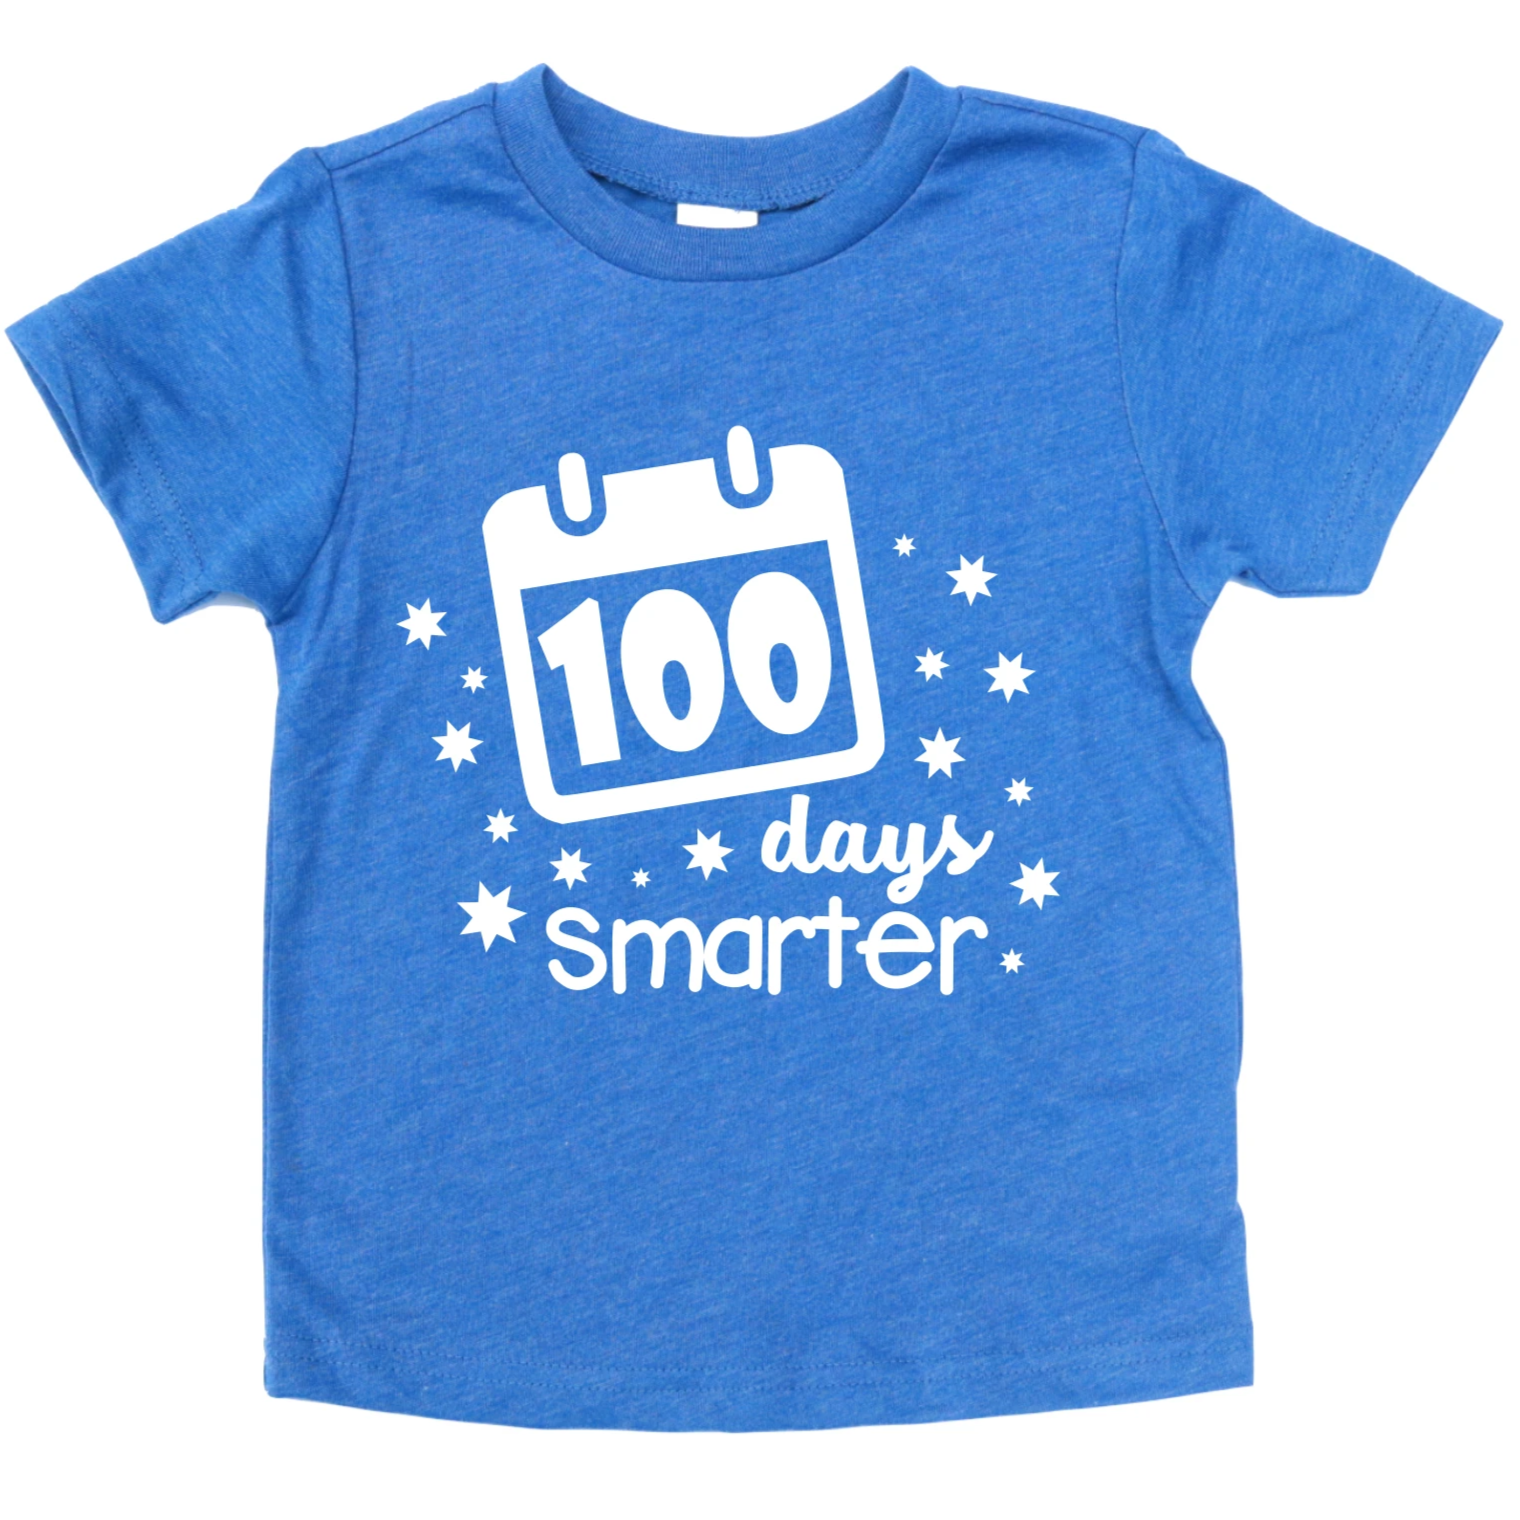 100 DAYS SMARTER KIDS SHIRT